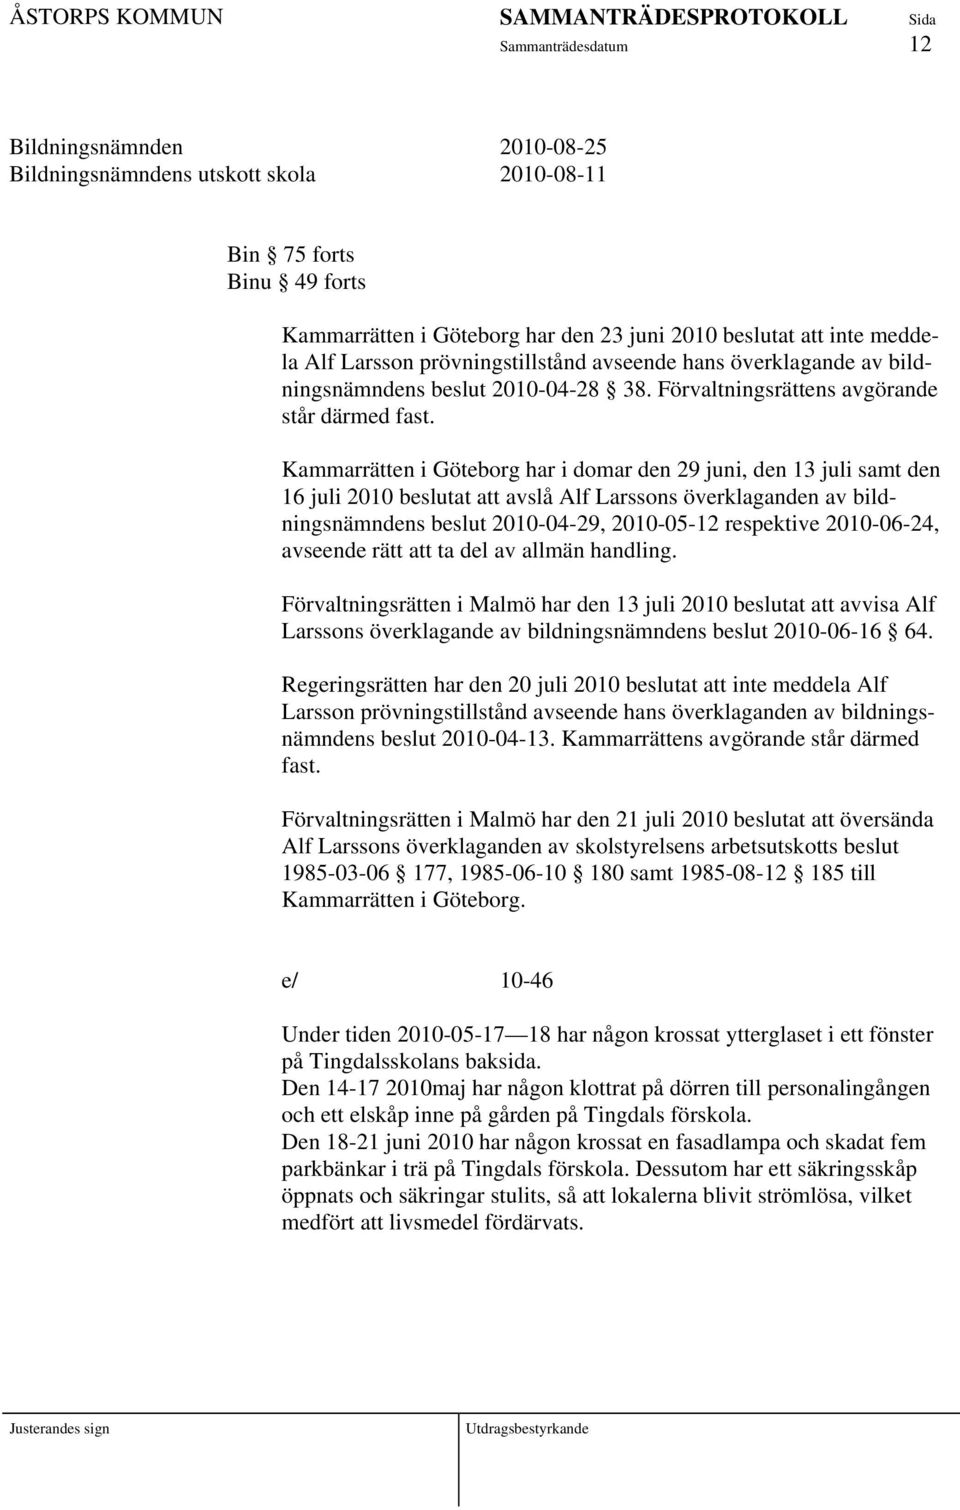 Kammarrätten i Göteborg har i domar den 29 juni, den 13 juli samt den 16 juli 2010 beslutat att avslå Alf Larssons överklaganden av bildningsnämndens beslut 2010-04-29, 2010-05-12 respektive